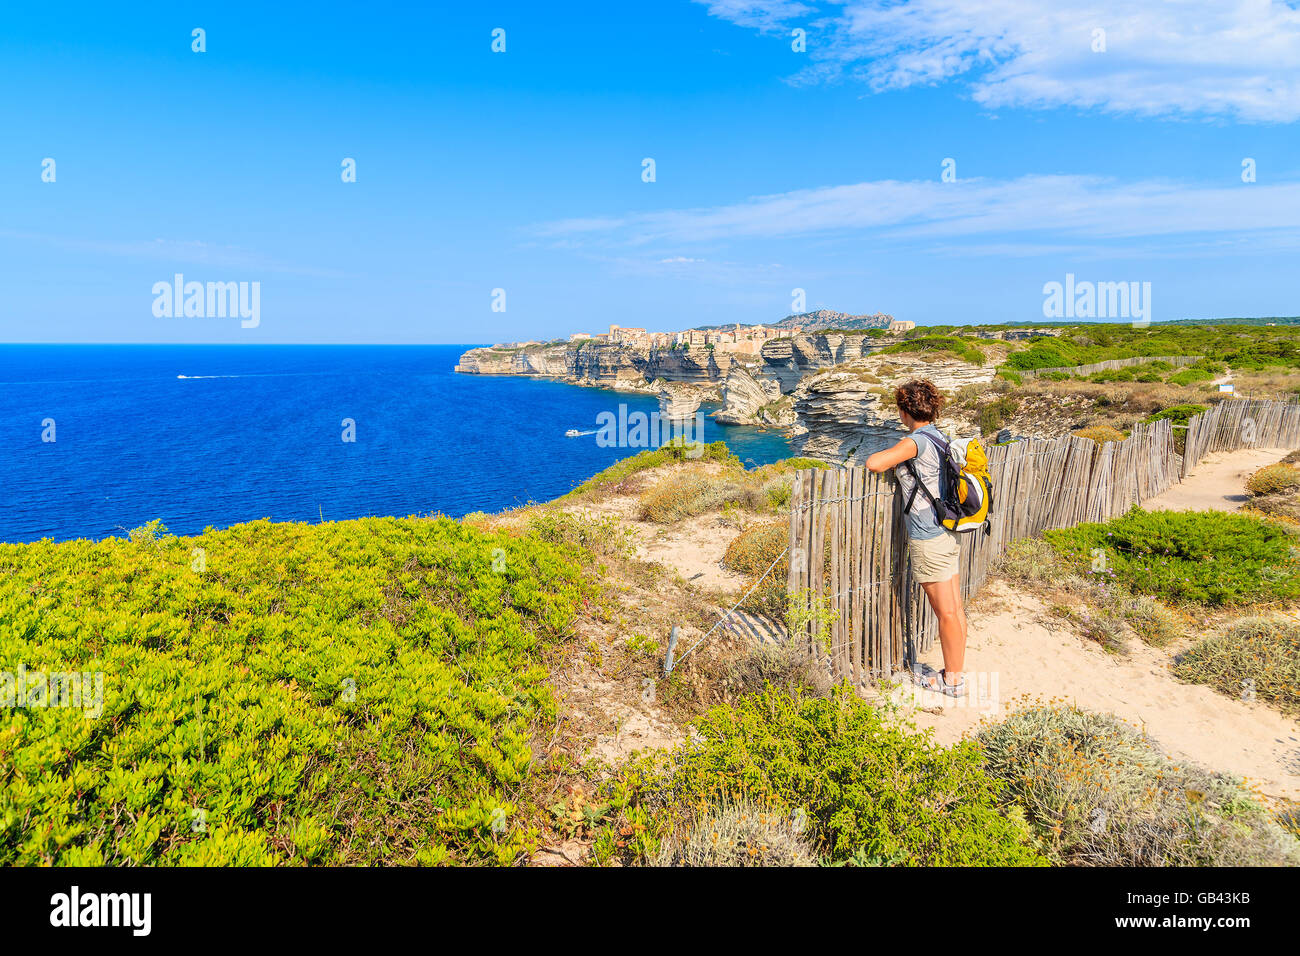 Jeune femme tourisme sentier du littoral à Bonifacio vieille ville construite sur une falaise au-dessus de la mer, Corse, France Banque D'Images